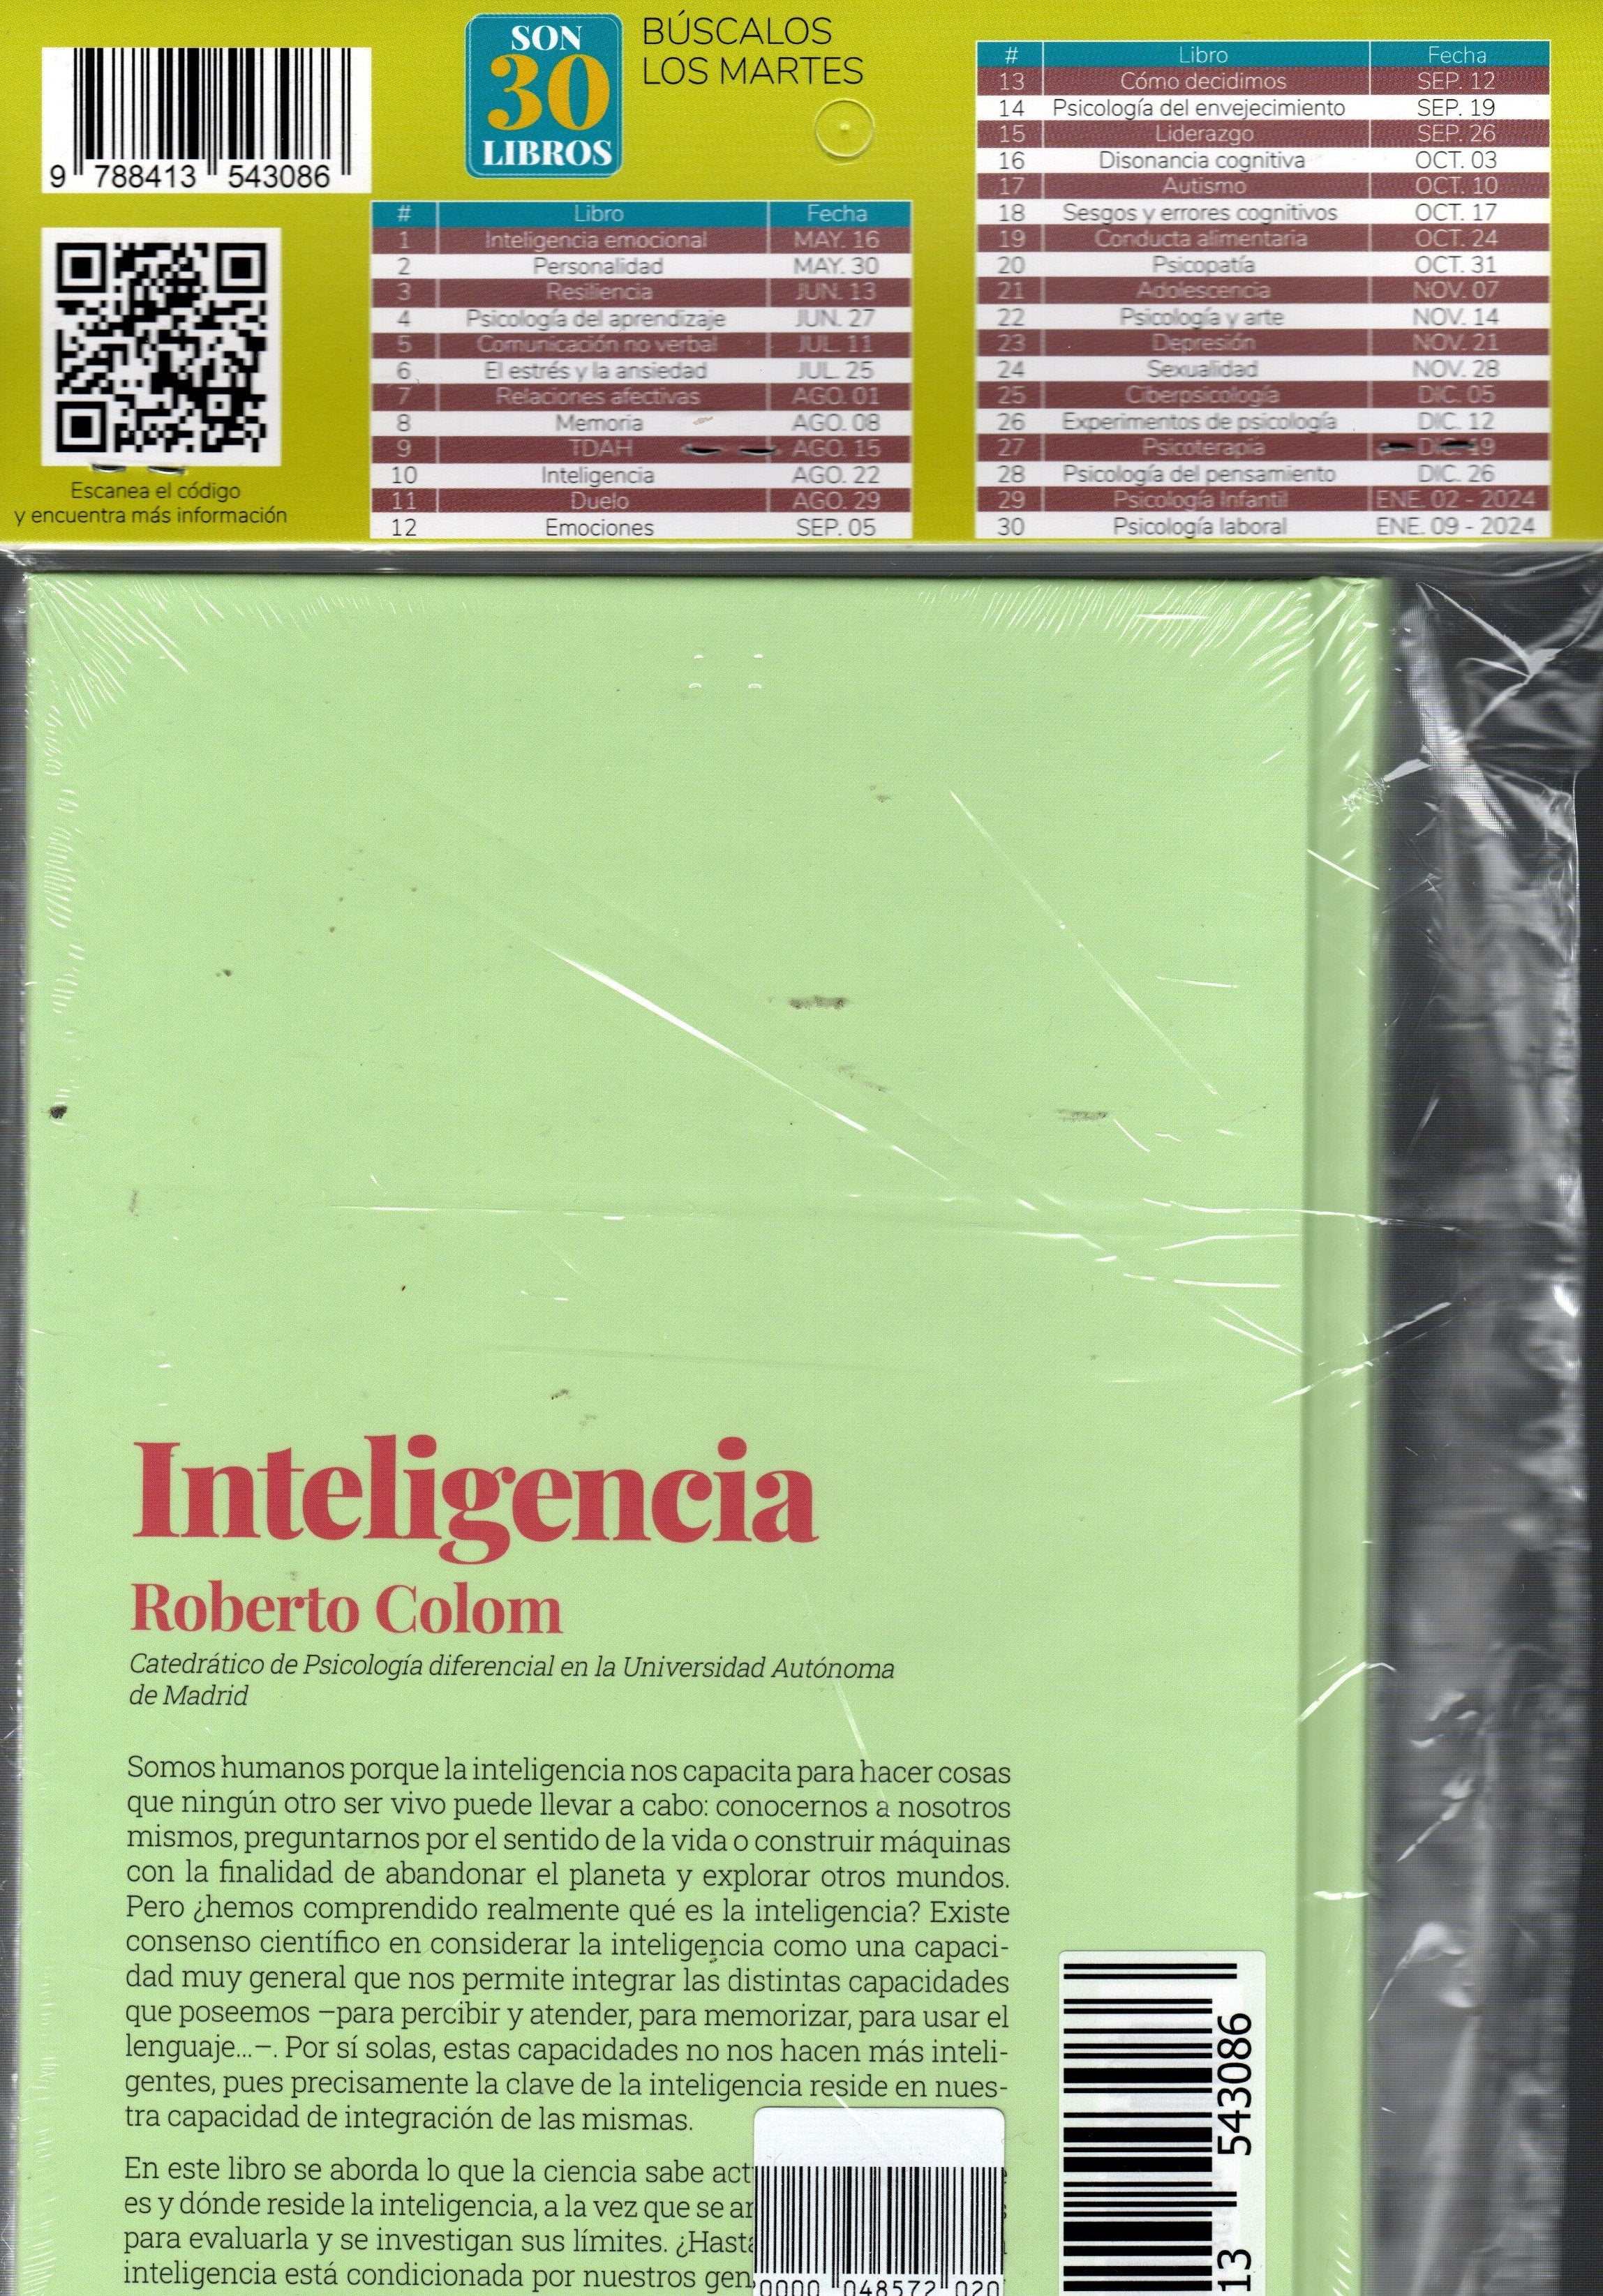 Libro Roberto Colom - Inteligencia Integrando nuestras capacidades mentales